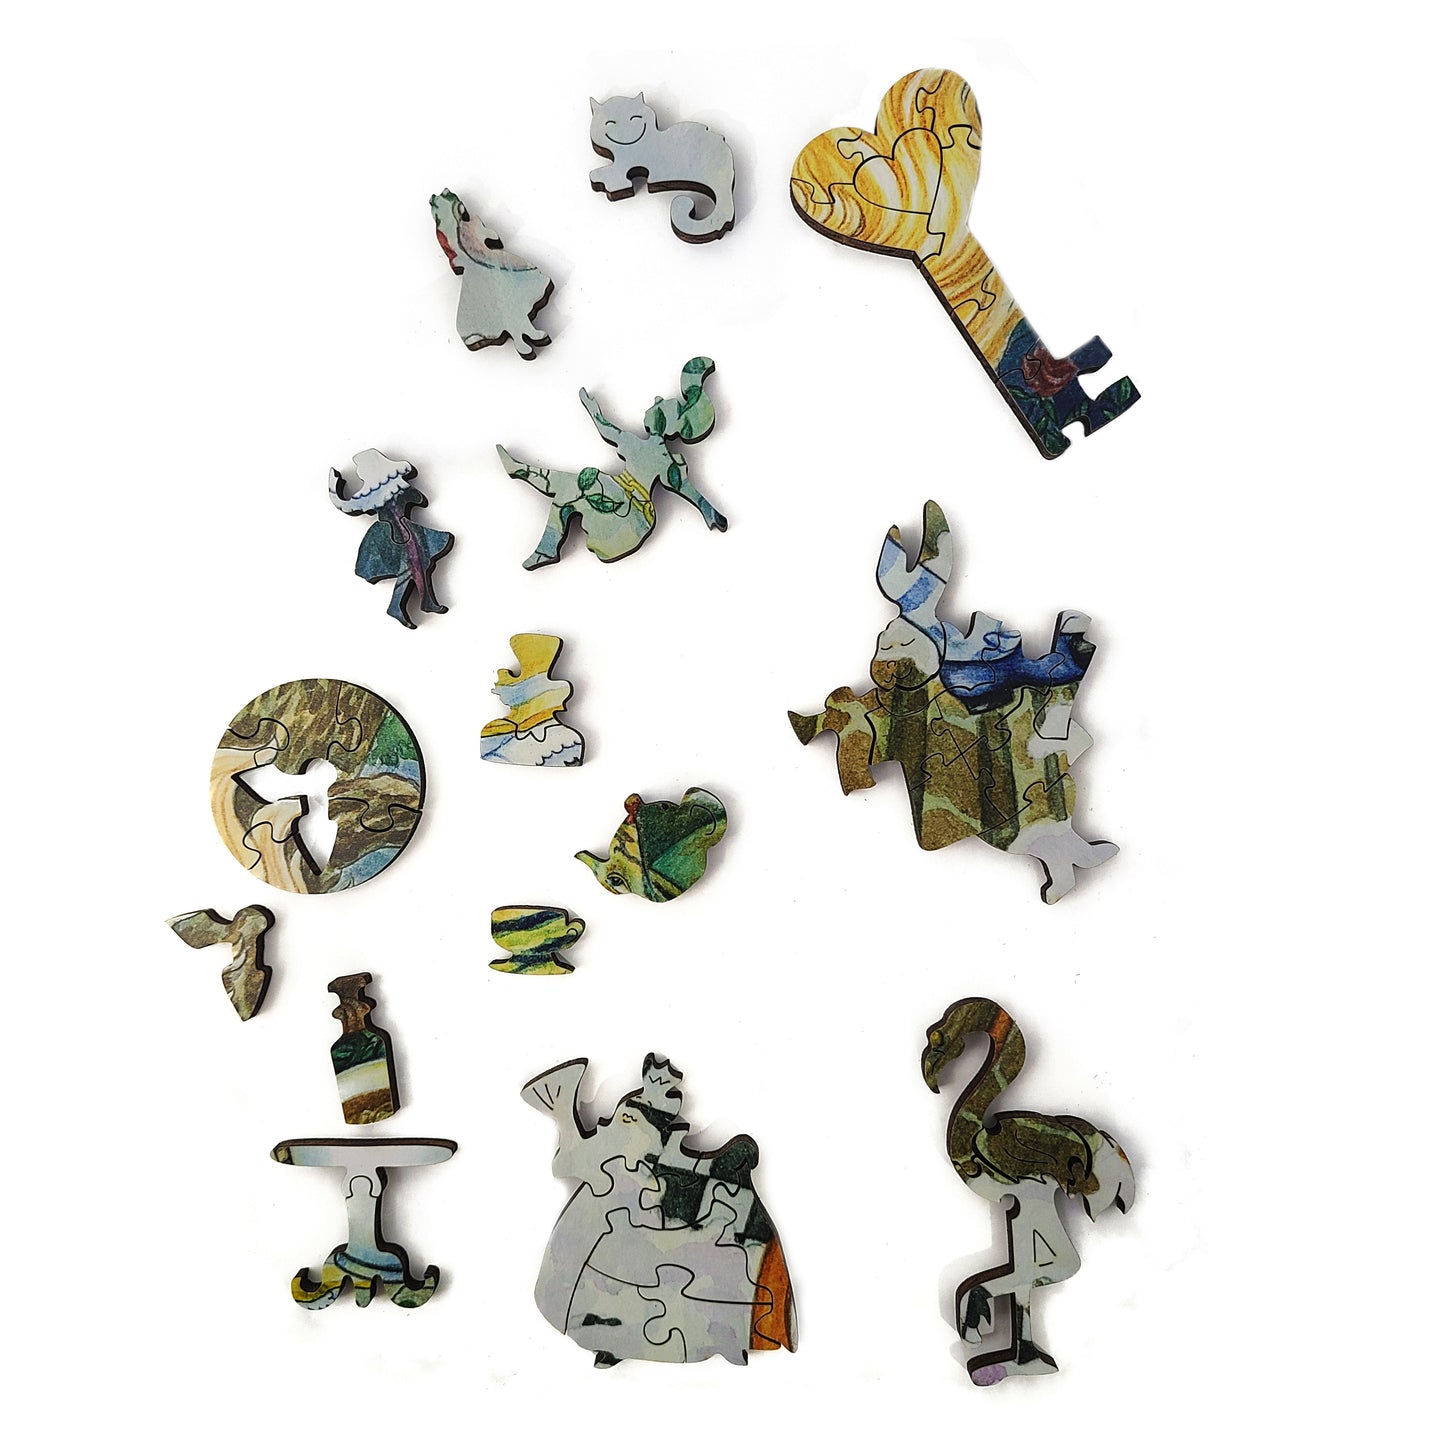 Rompecabezas de madera con piezas de formas únicas para adultos - 439 piezas - Alice's Fantasies